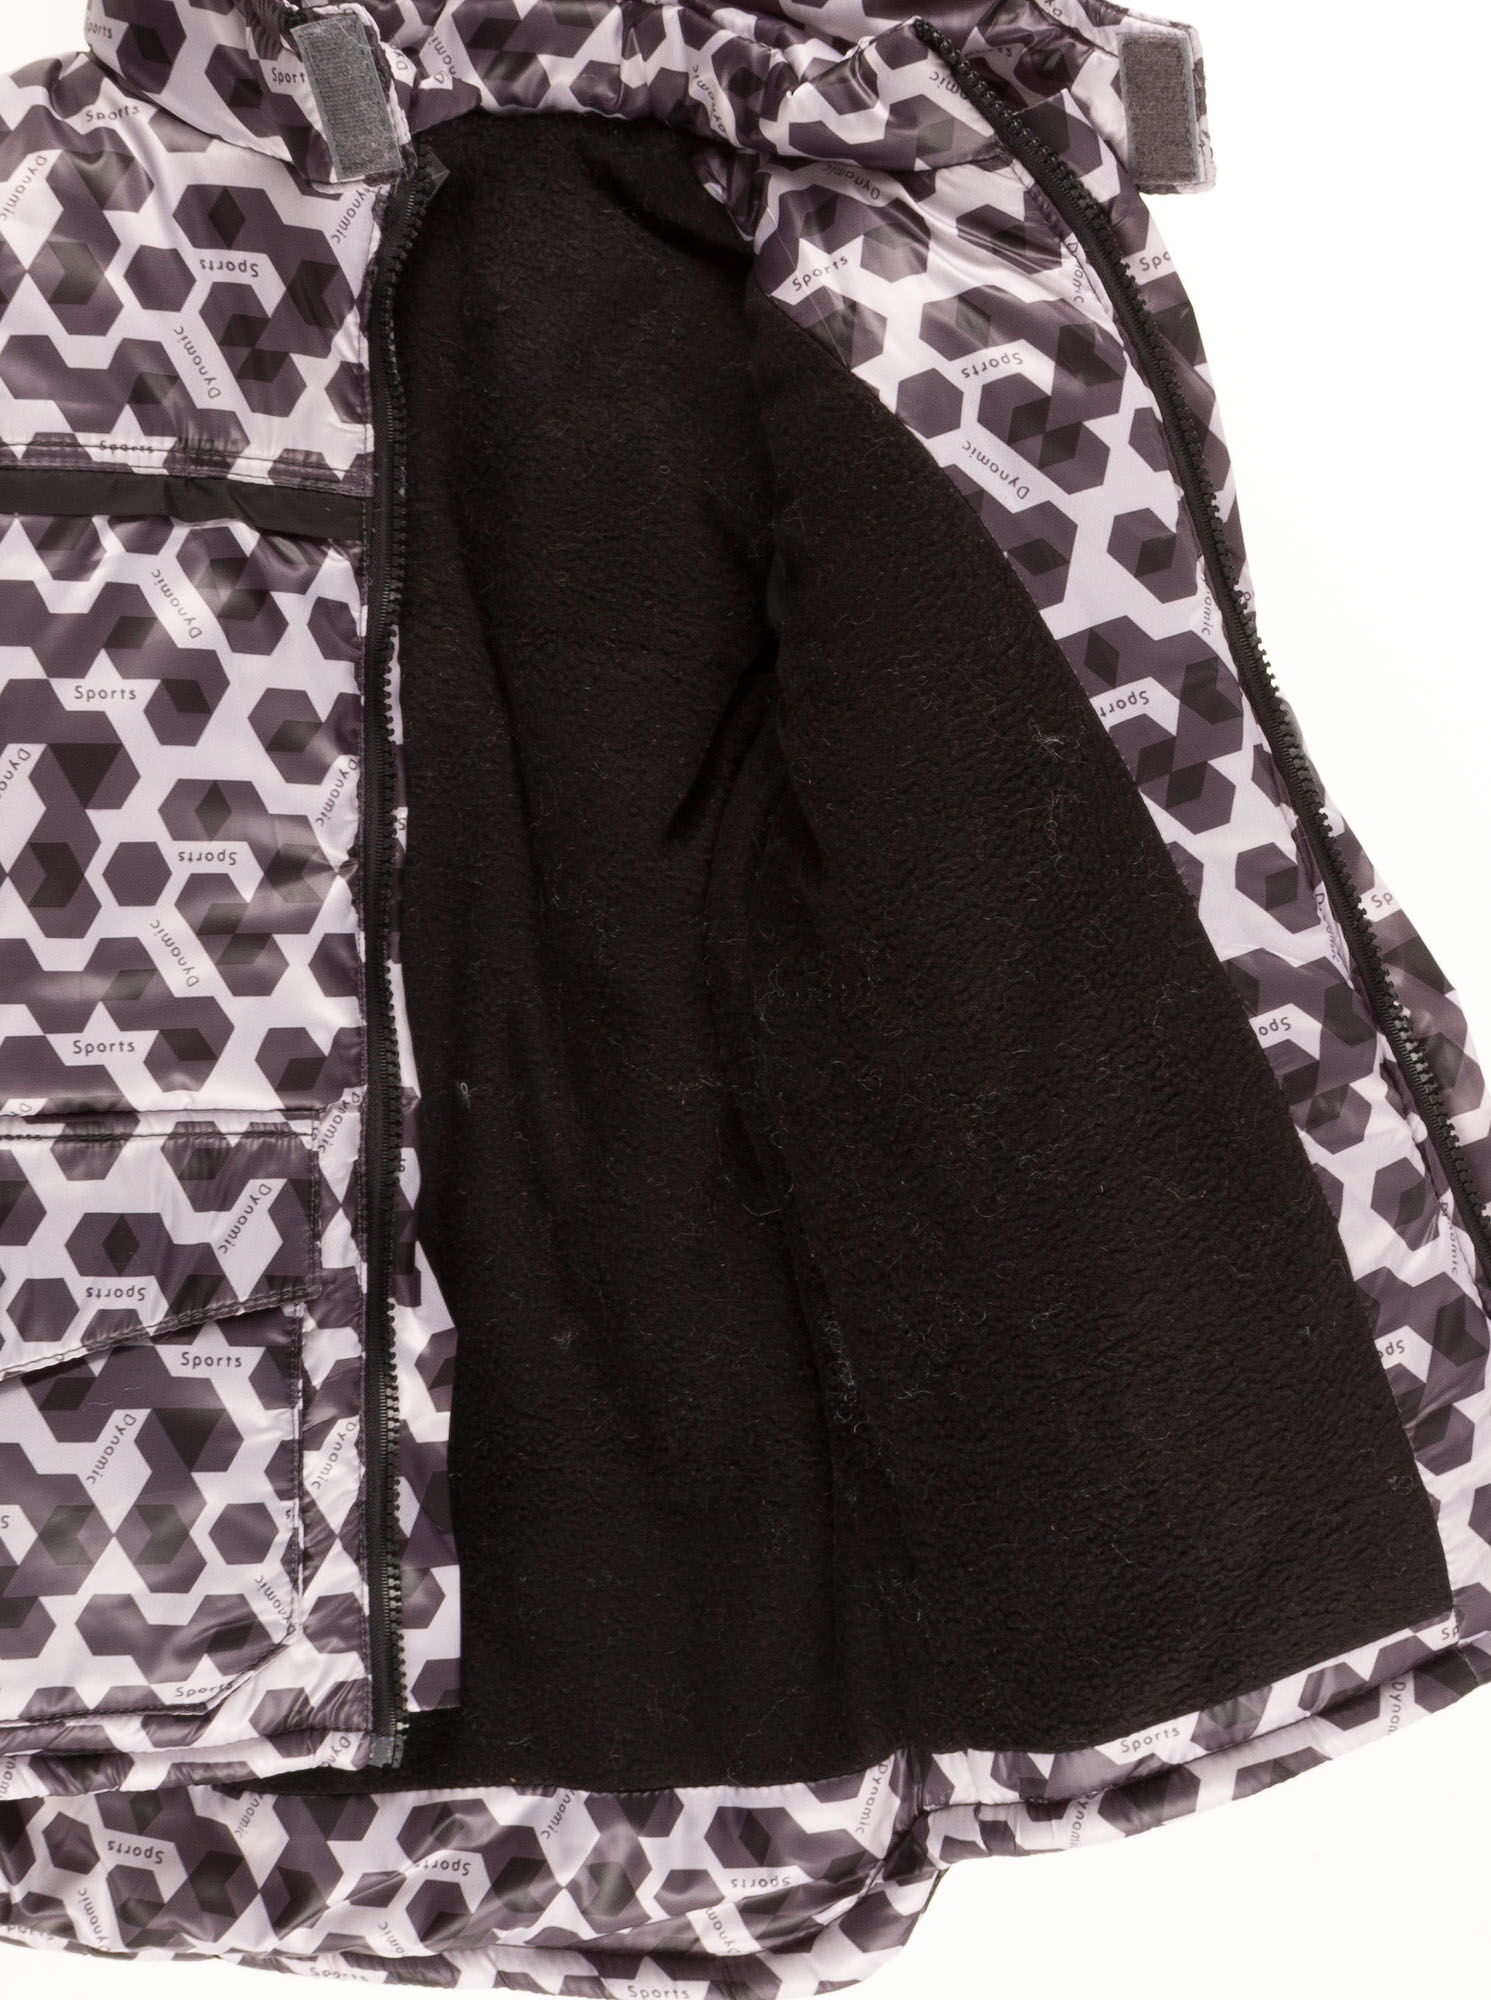 Комбинезон зимний раздельный для мальчика (куртка+штаны) Одягайко геометрия черный 20088+01241О - купить